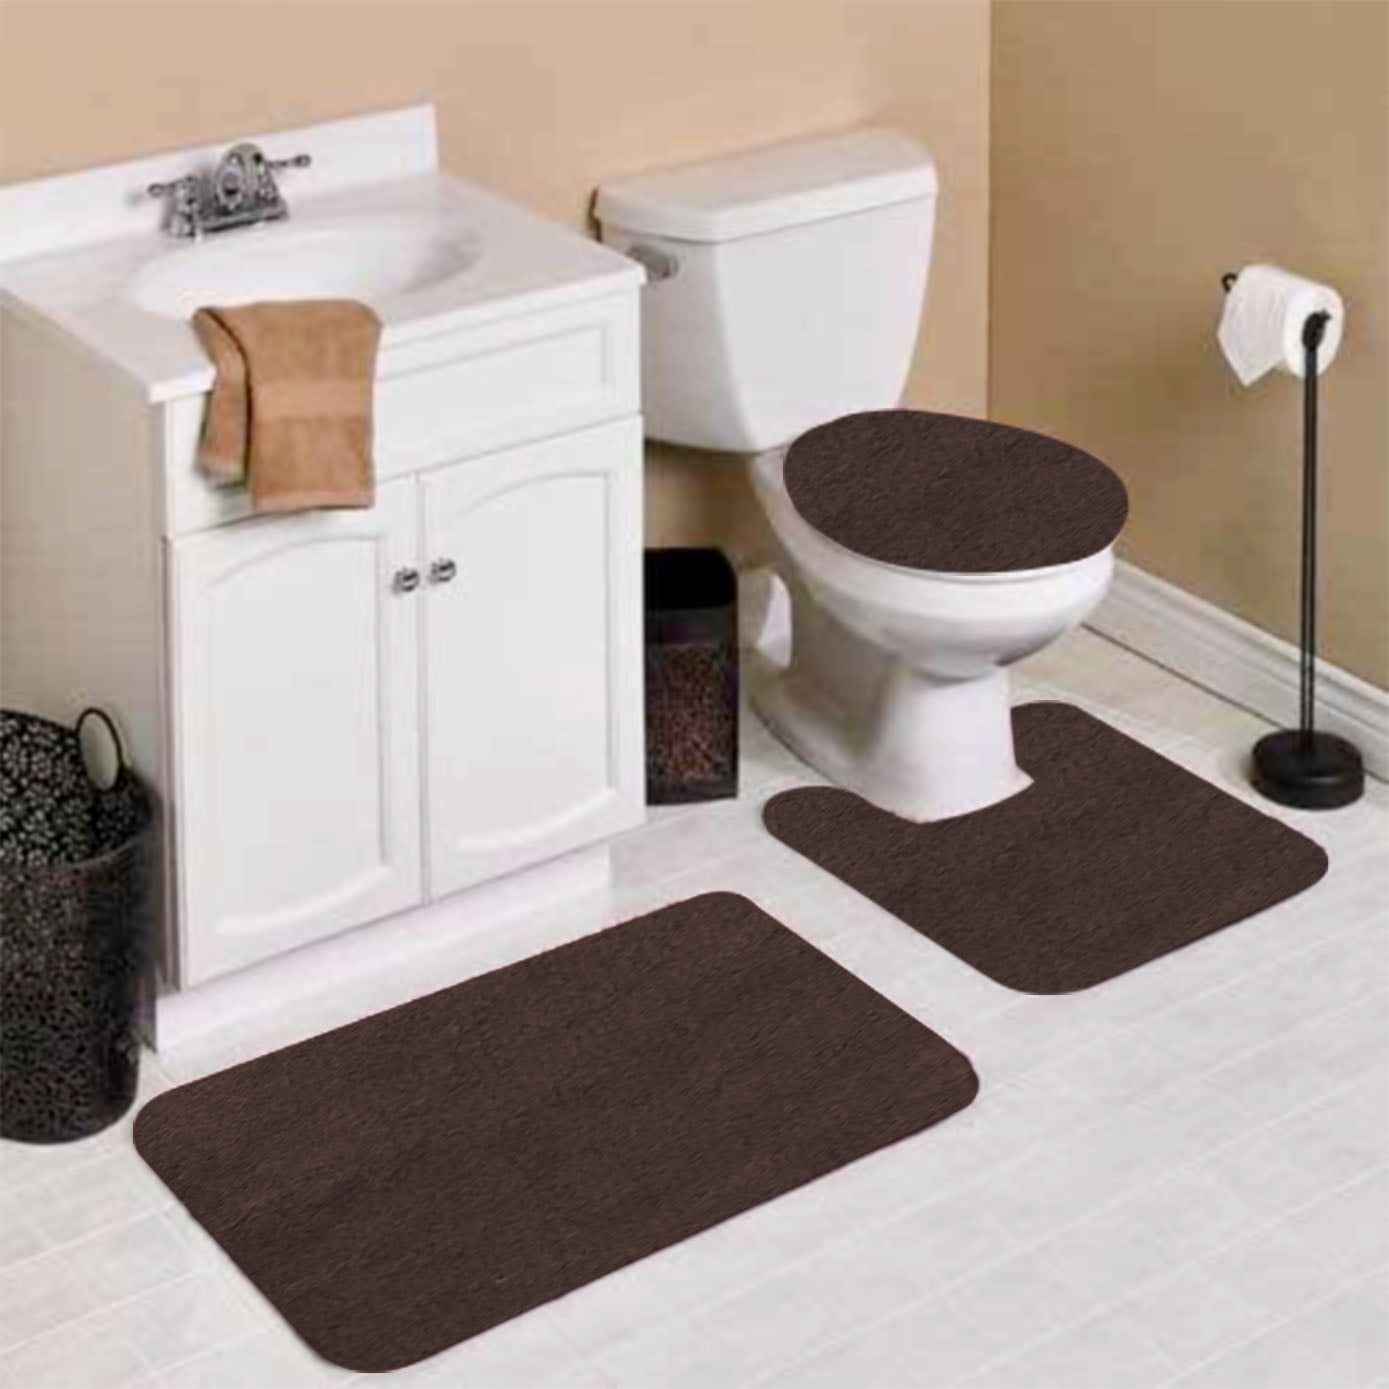 Details about   Large & Soft Bathroom Shower Bath Mat Set Non Slip & Toilet Pedestal Rug 2 Piece 